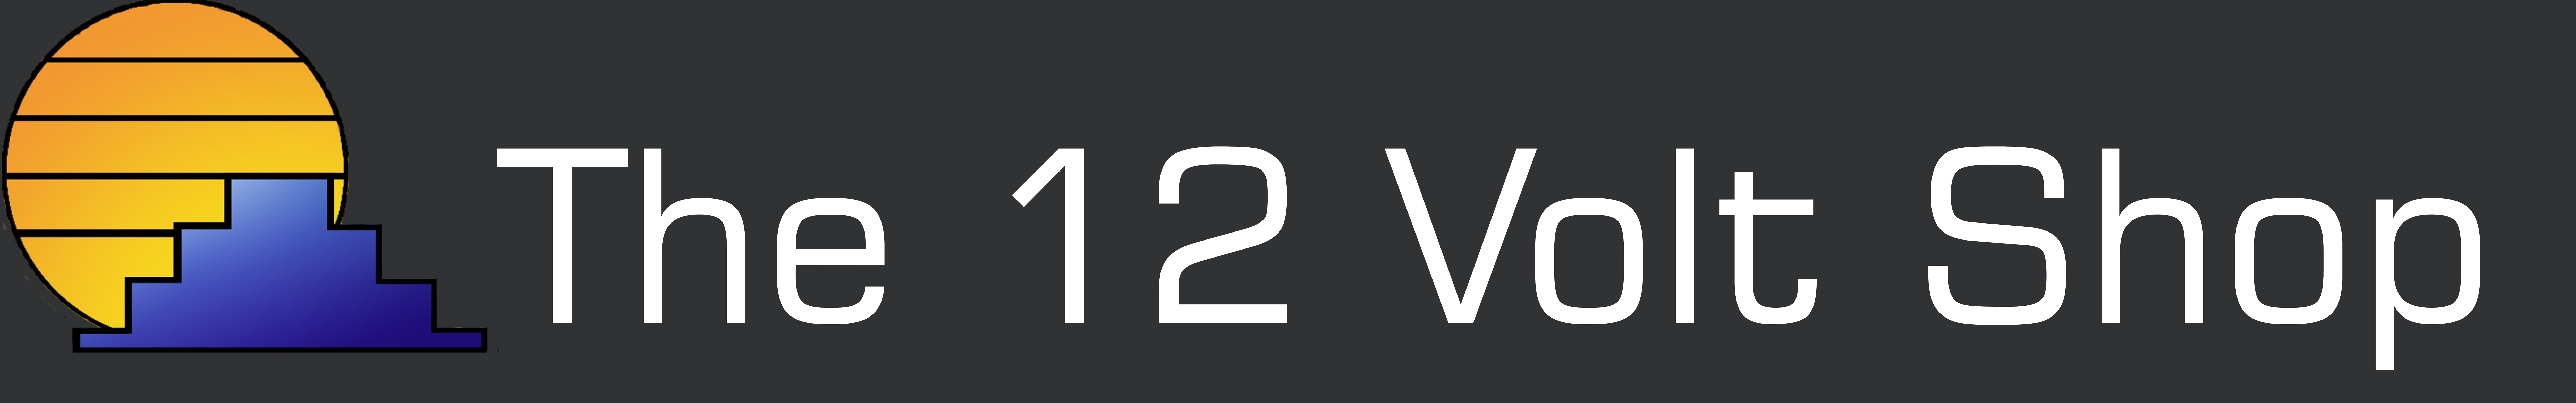 The 12 Volt Shop logo